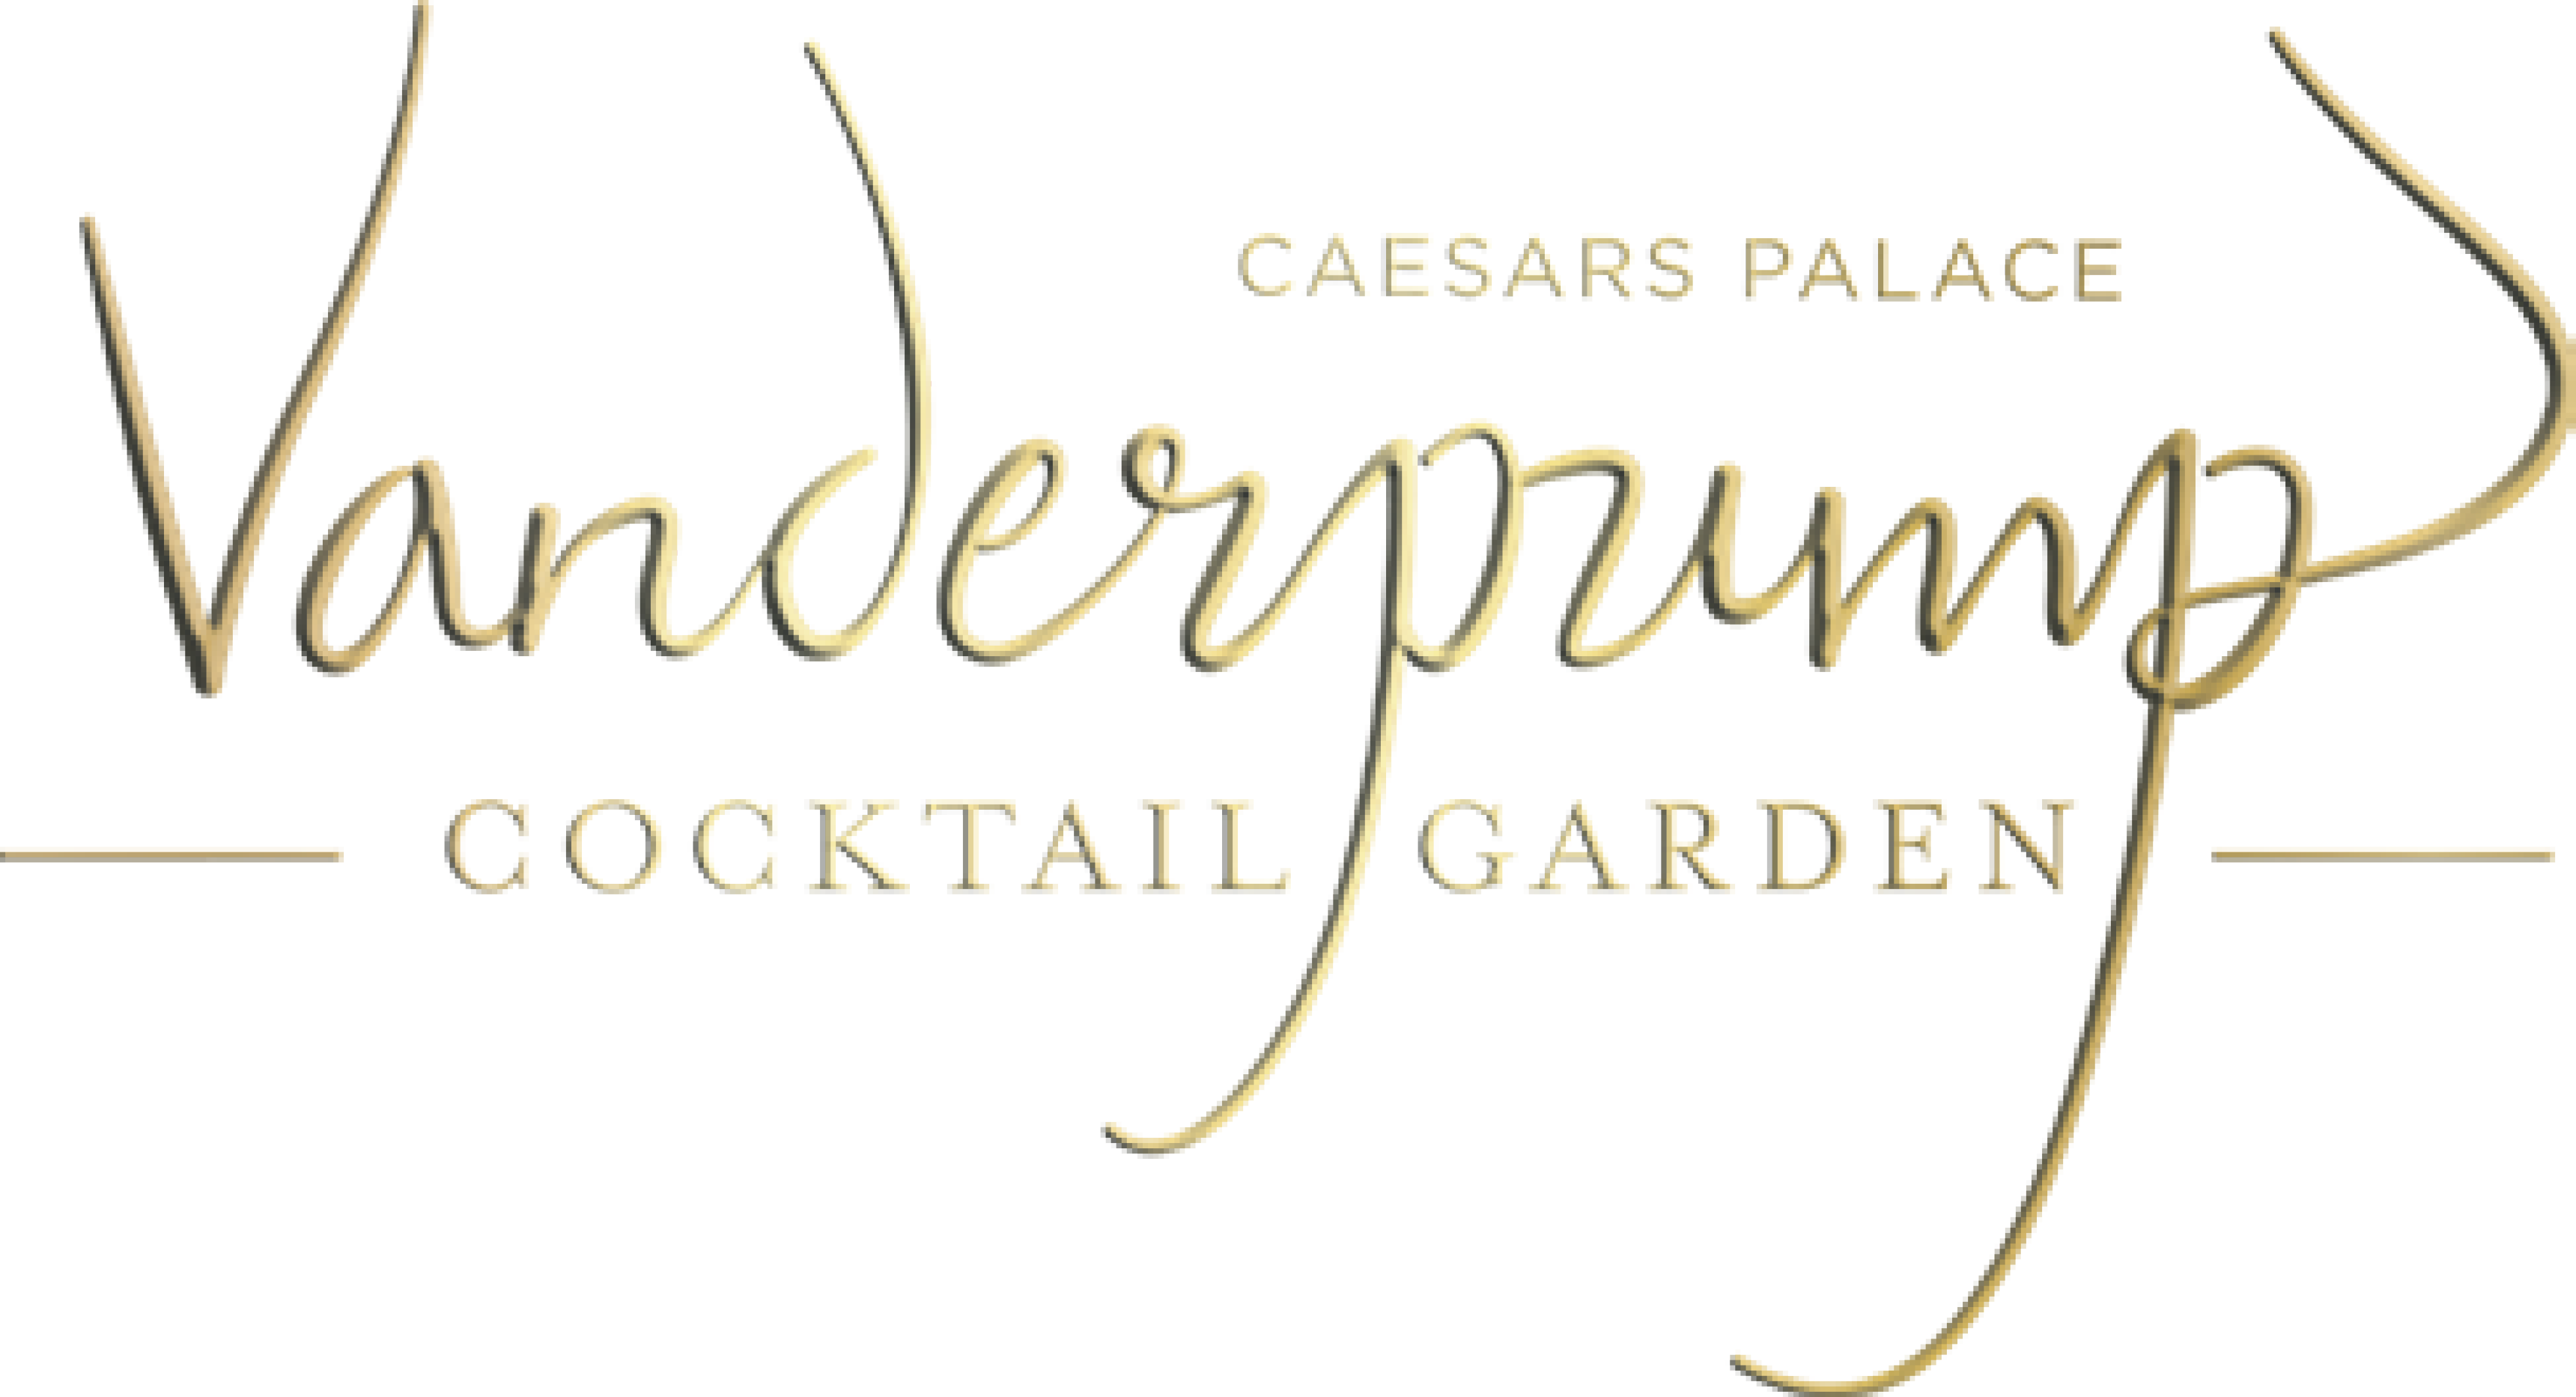 Vanderpump Cocktail Garden